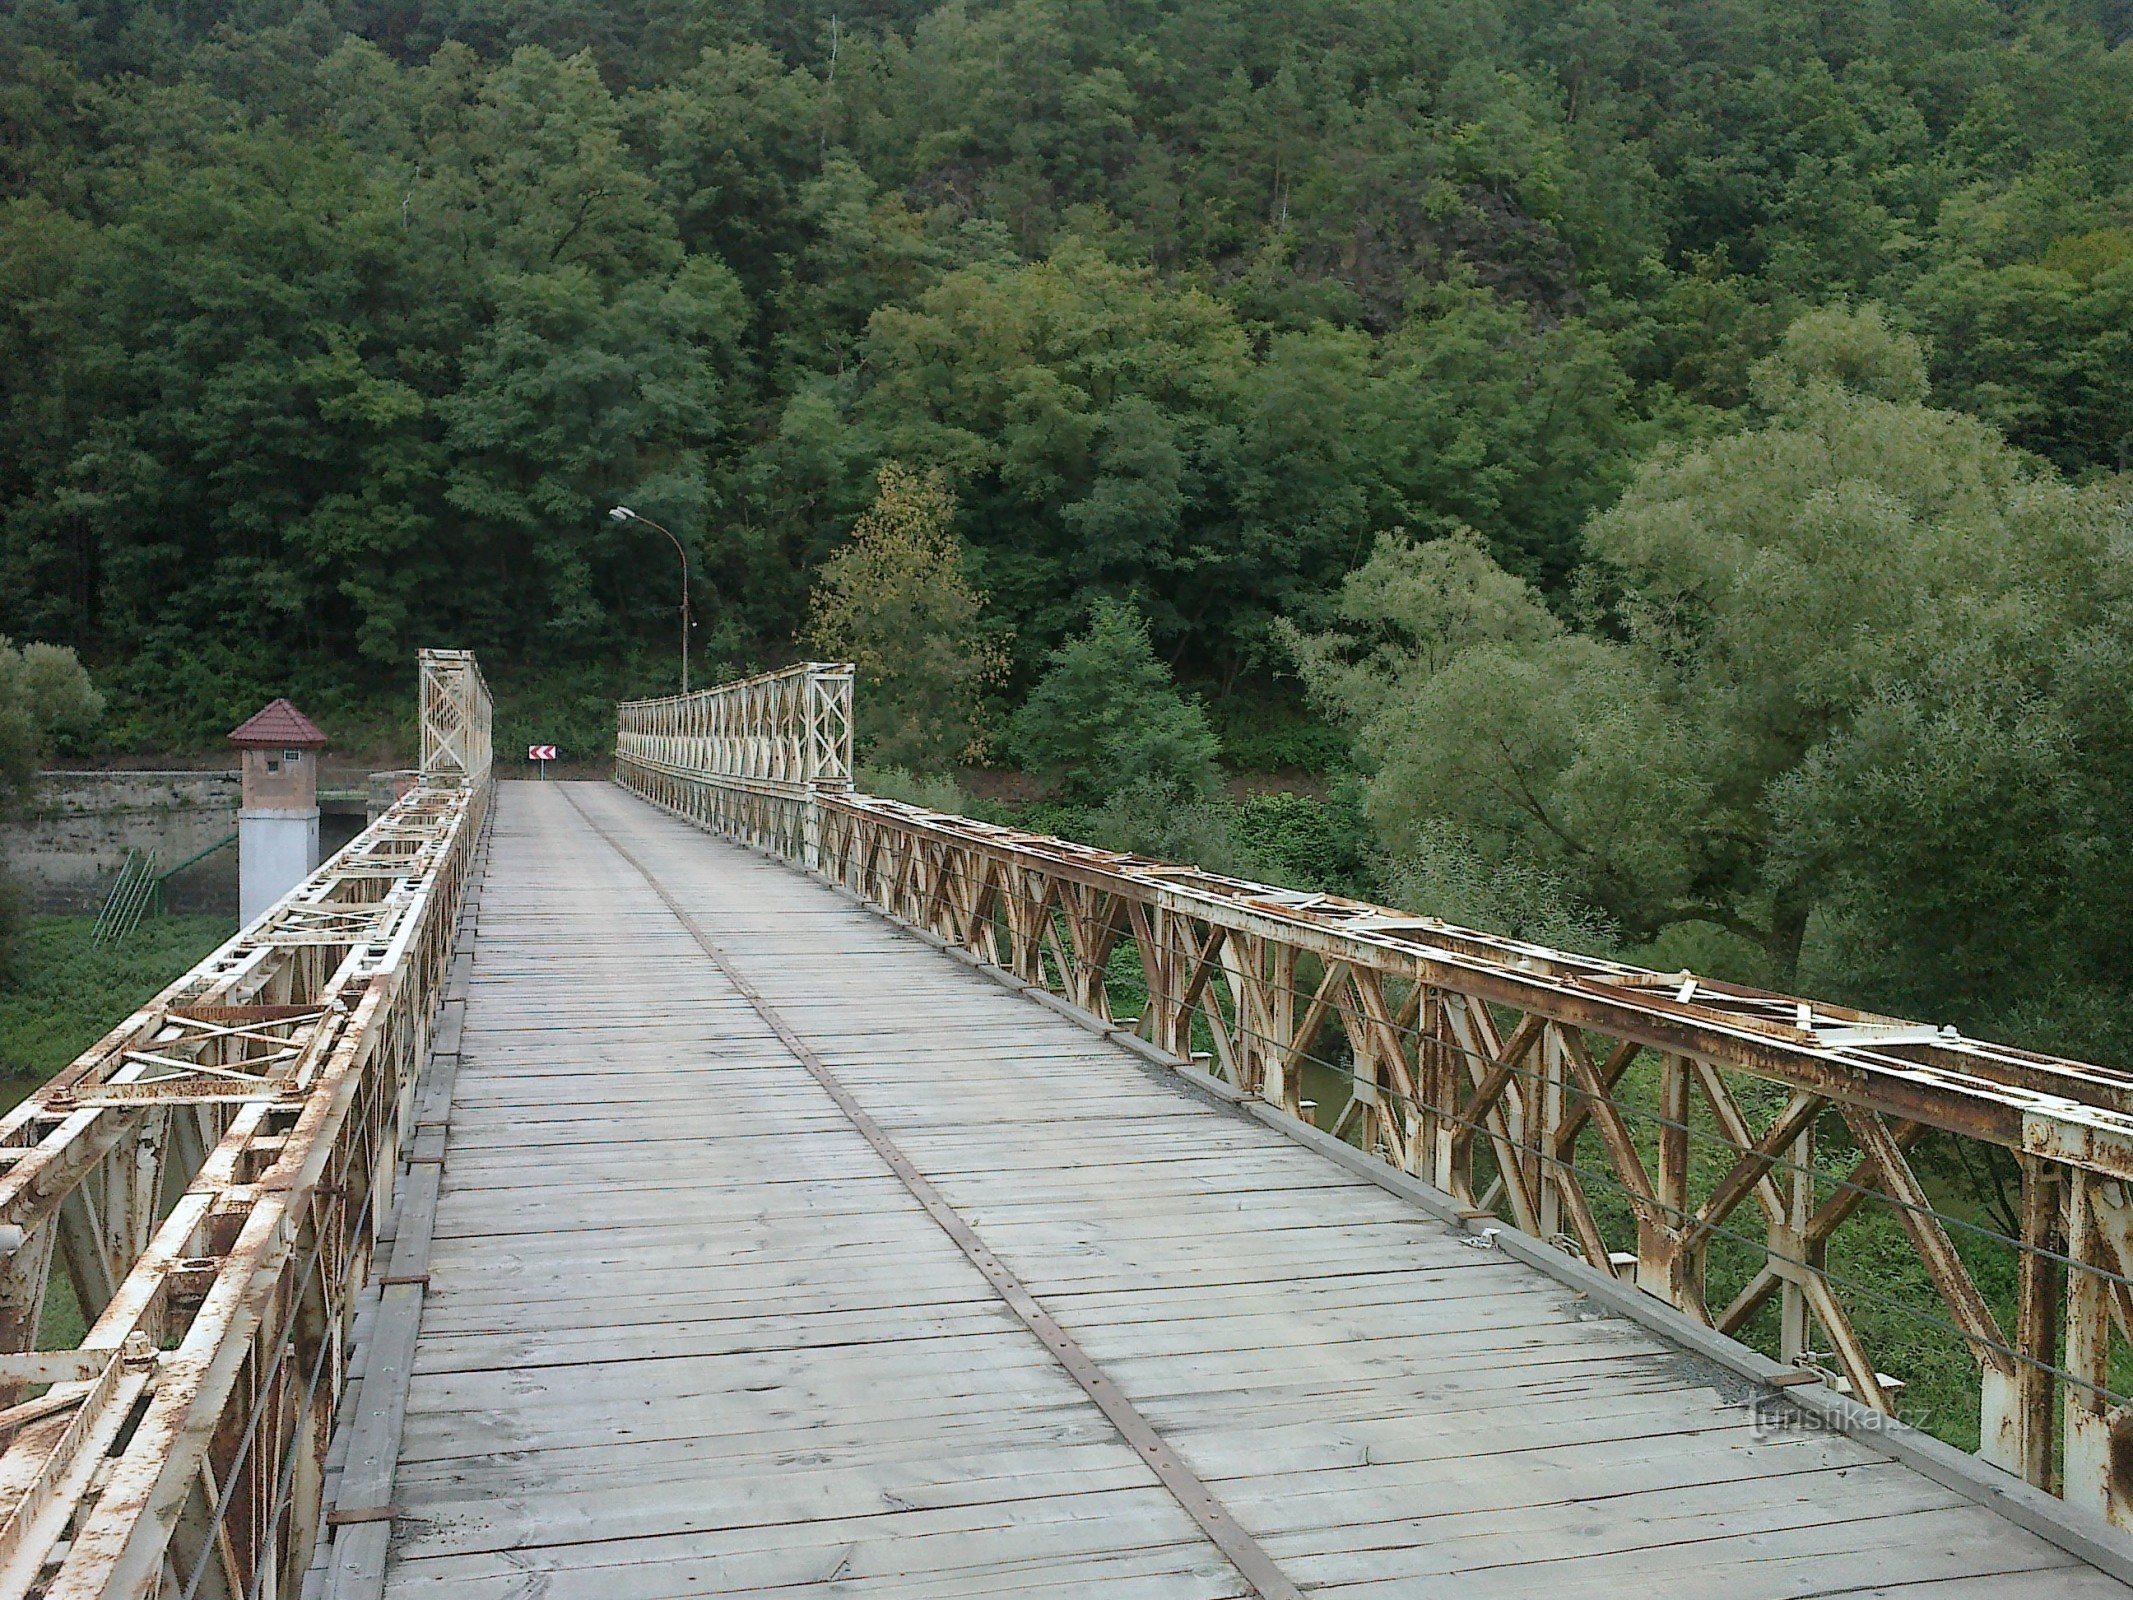 Kilátás a hídra a város irányába